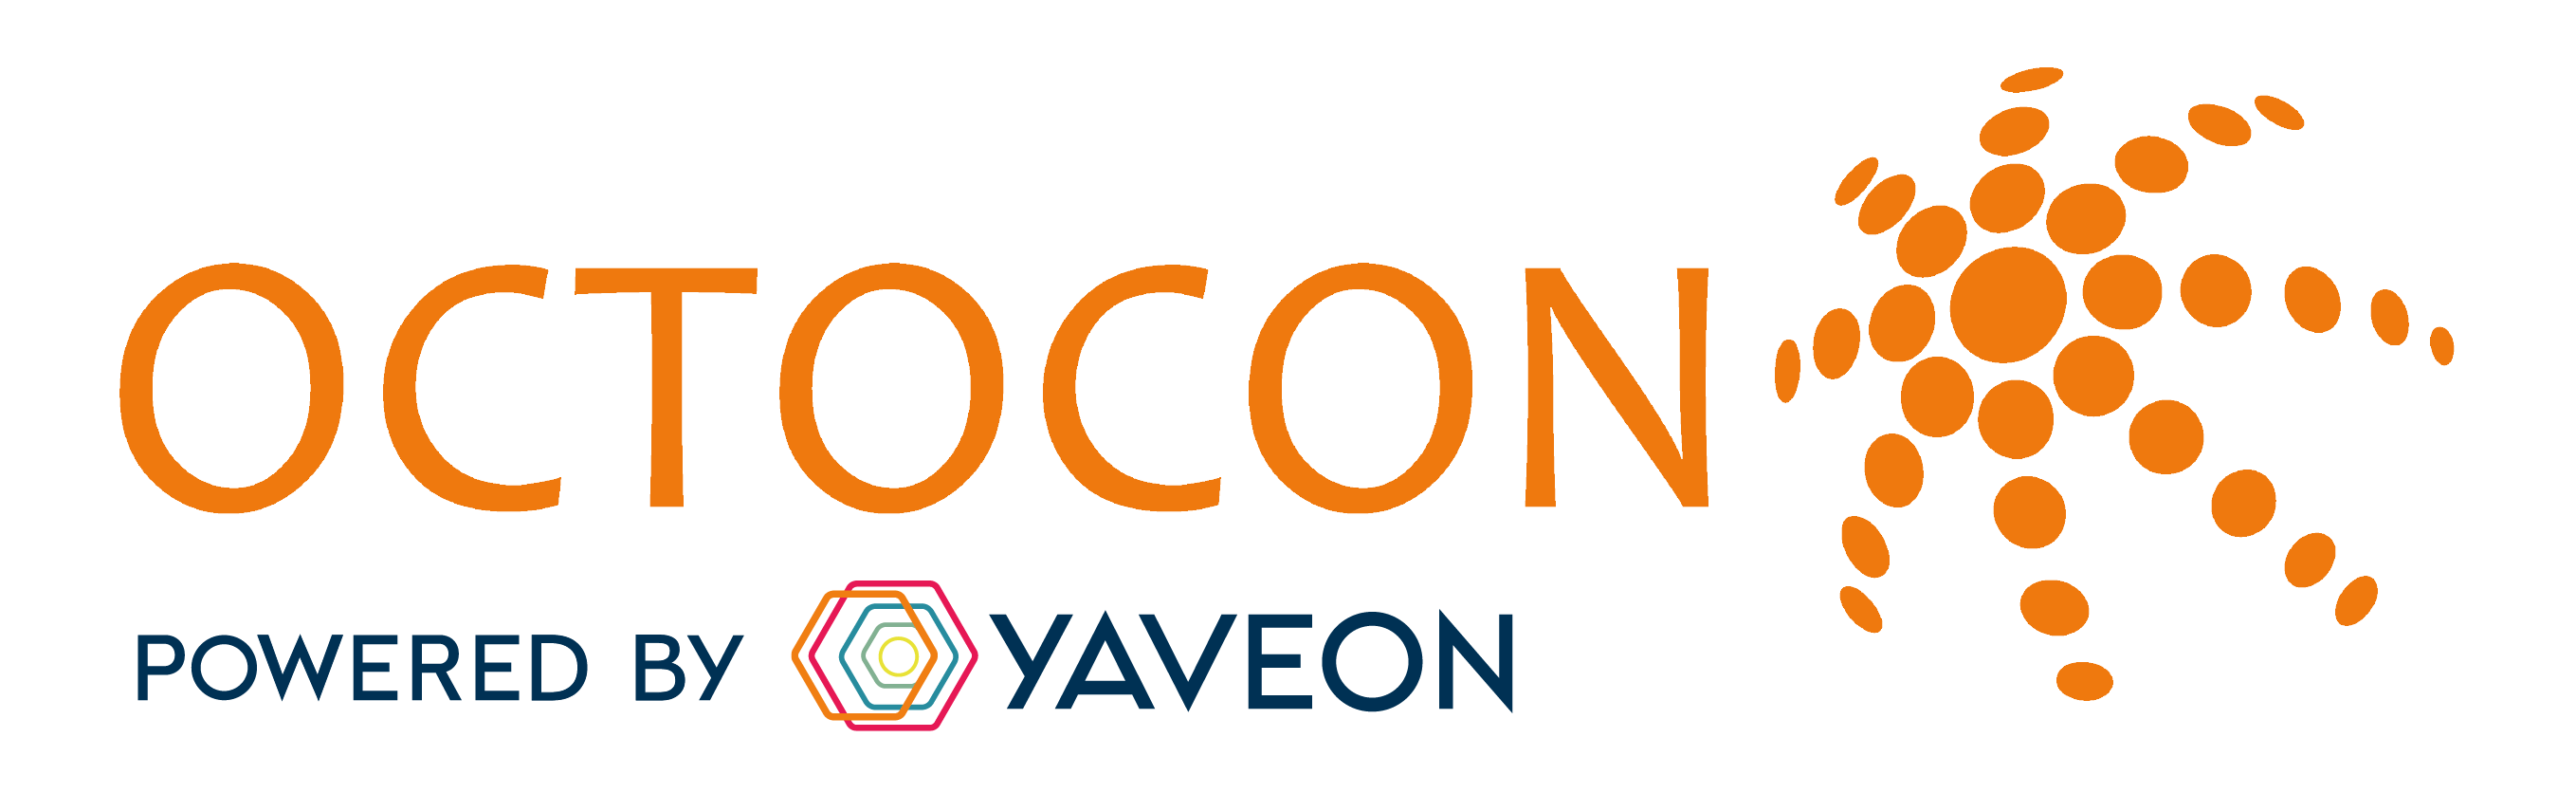 Octocon Yaveon Logo